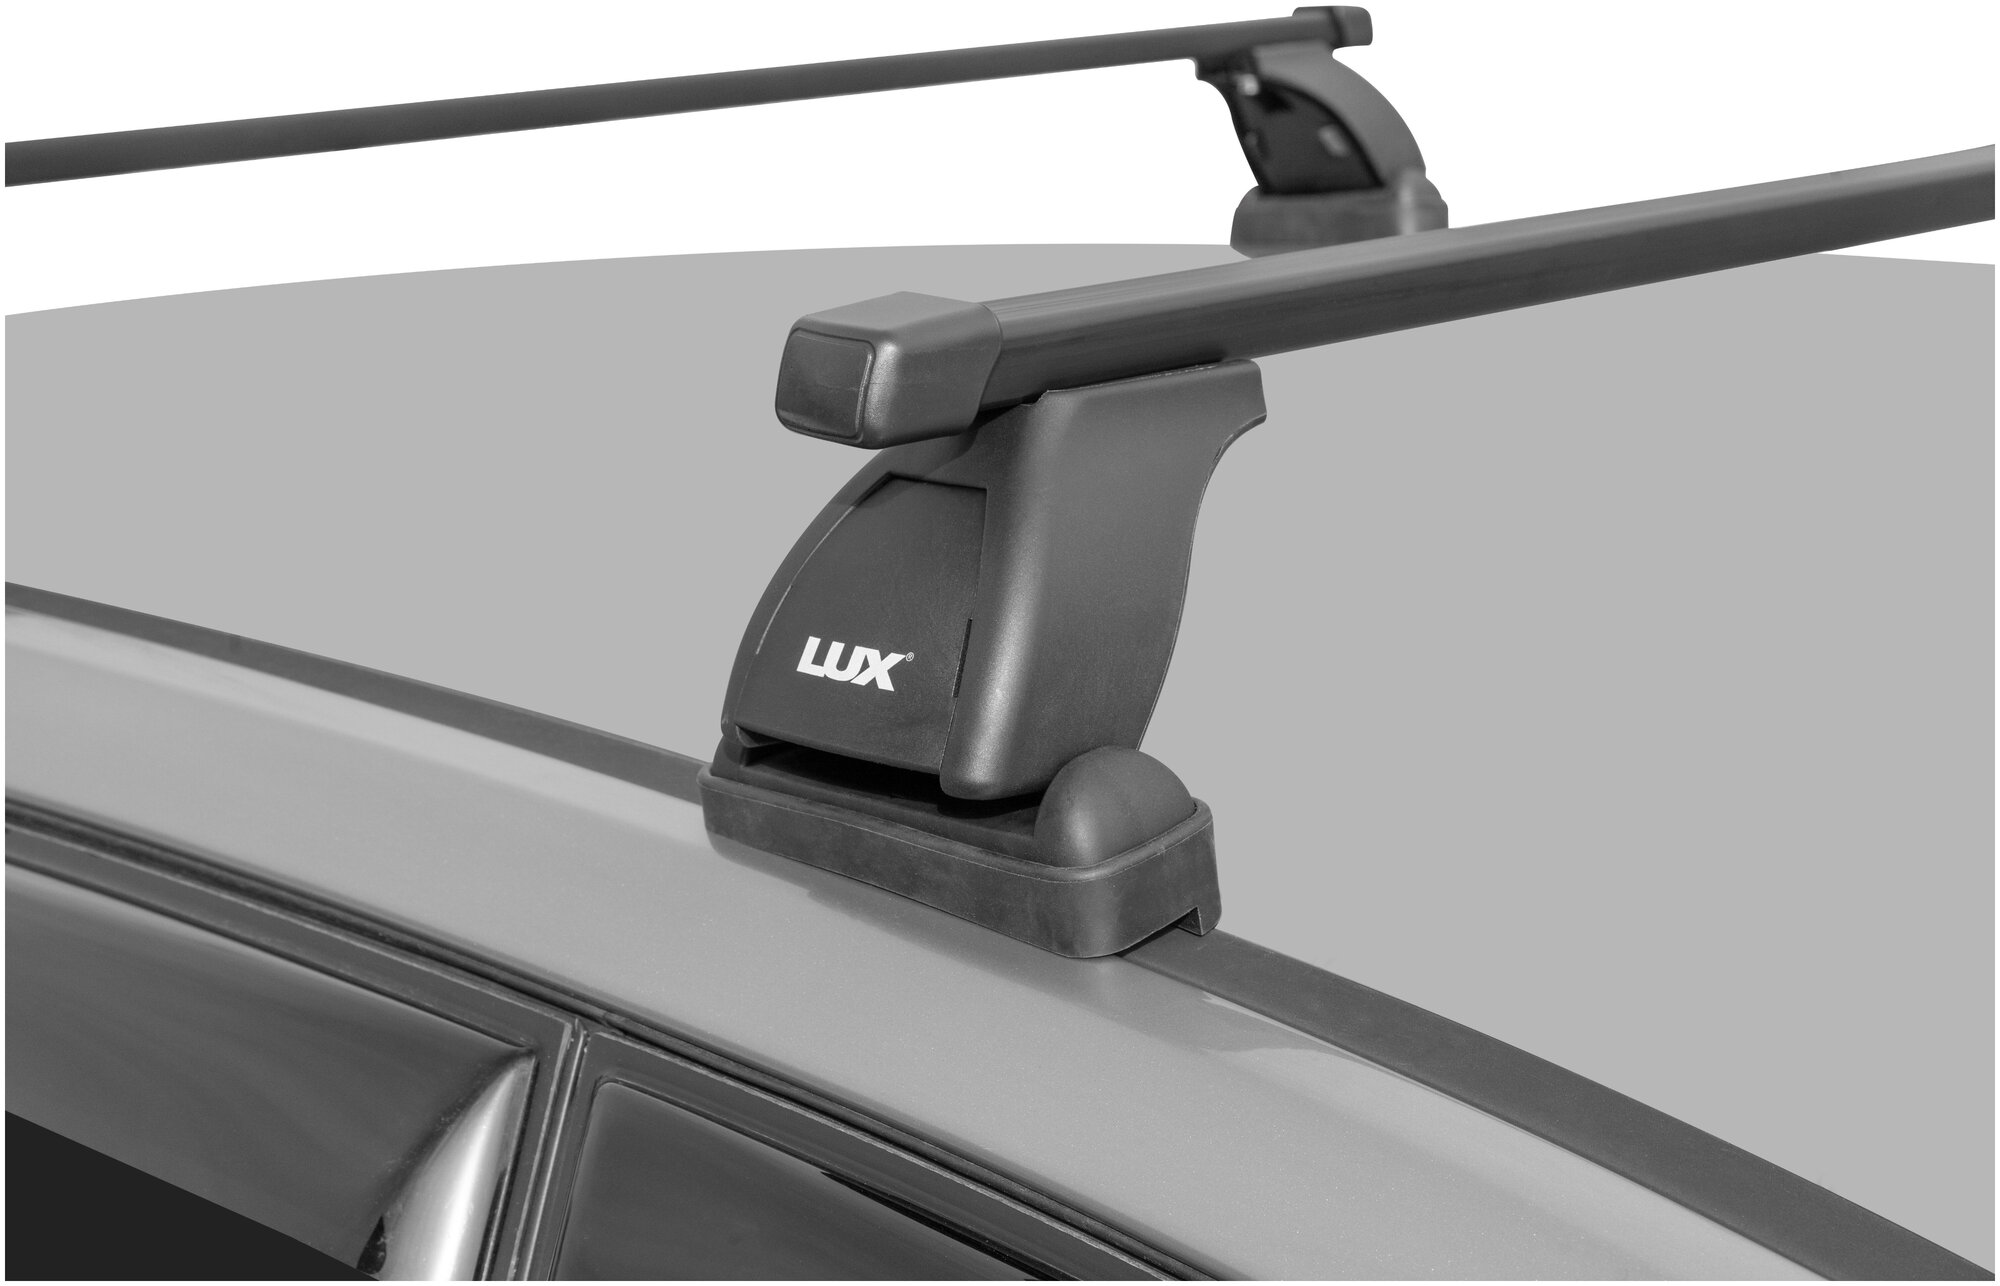 Багажная система "LUX" с дугами 1,3м прямоугольными в пластике для а/м Citroen Berlingo, Peugeot Partner 2008-. г. в, Volkswagen Caddy 2015-. г. в.